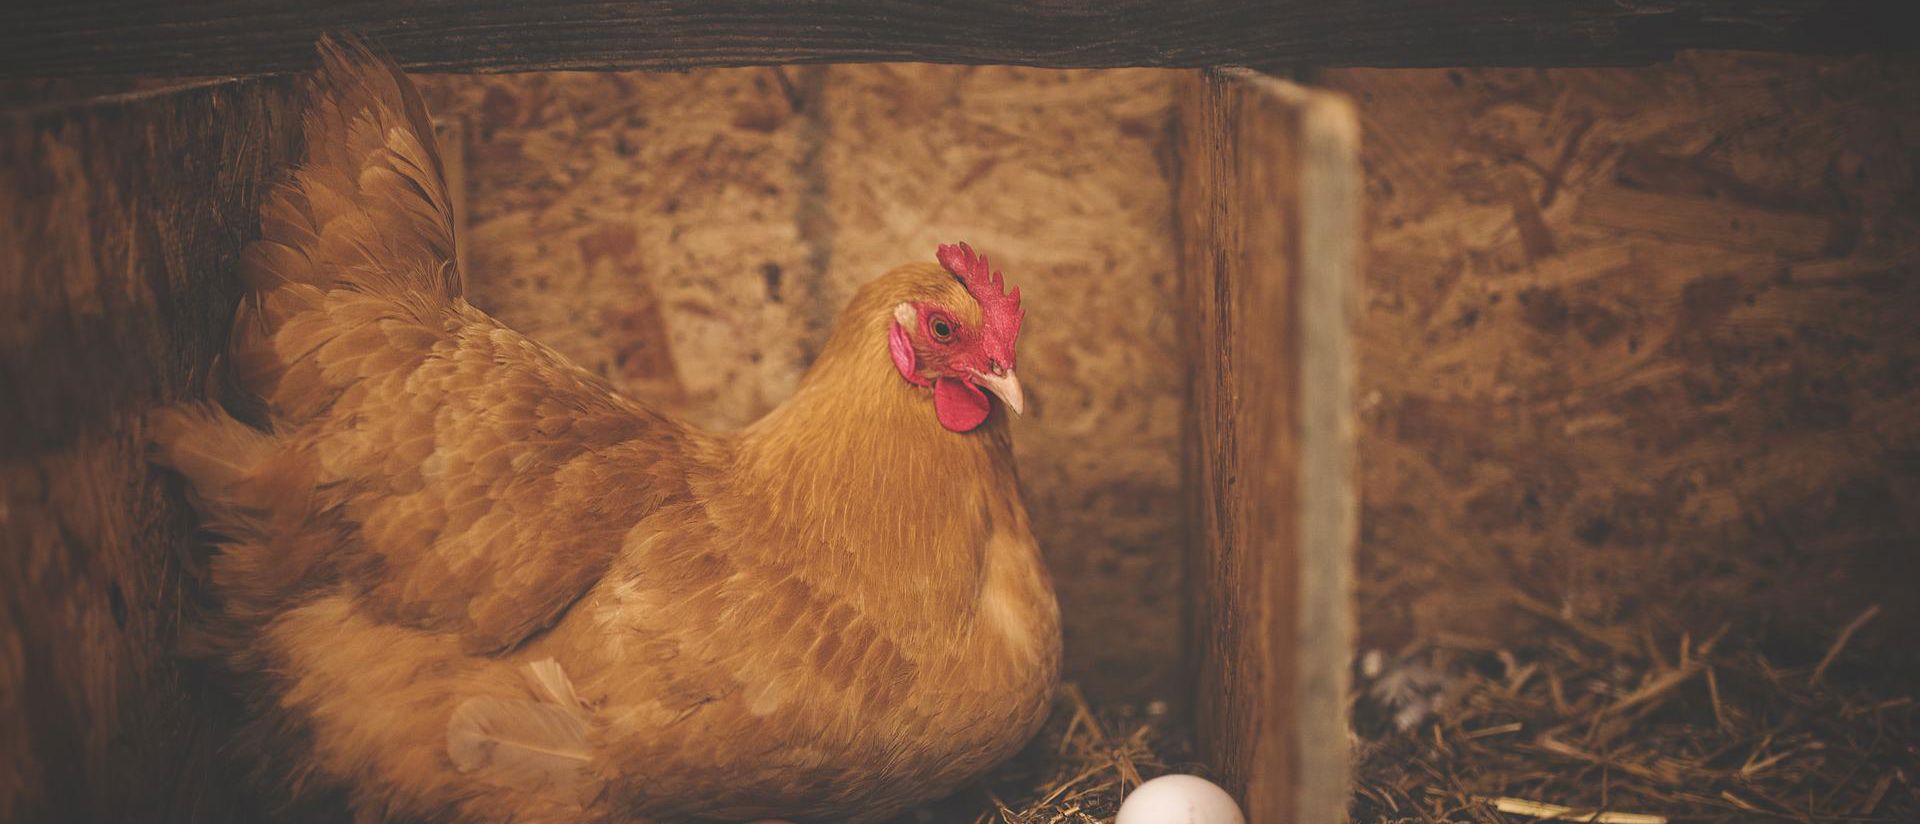 Kana munimassa